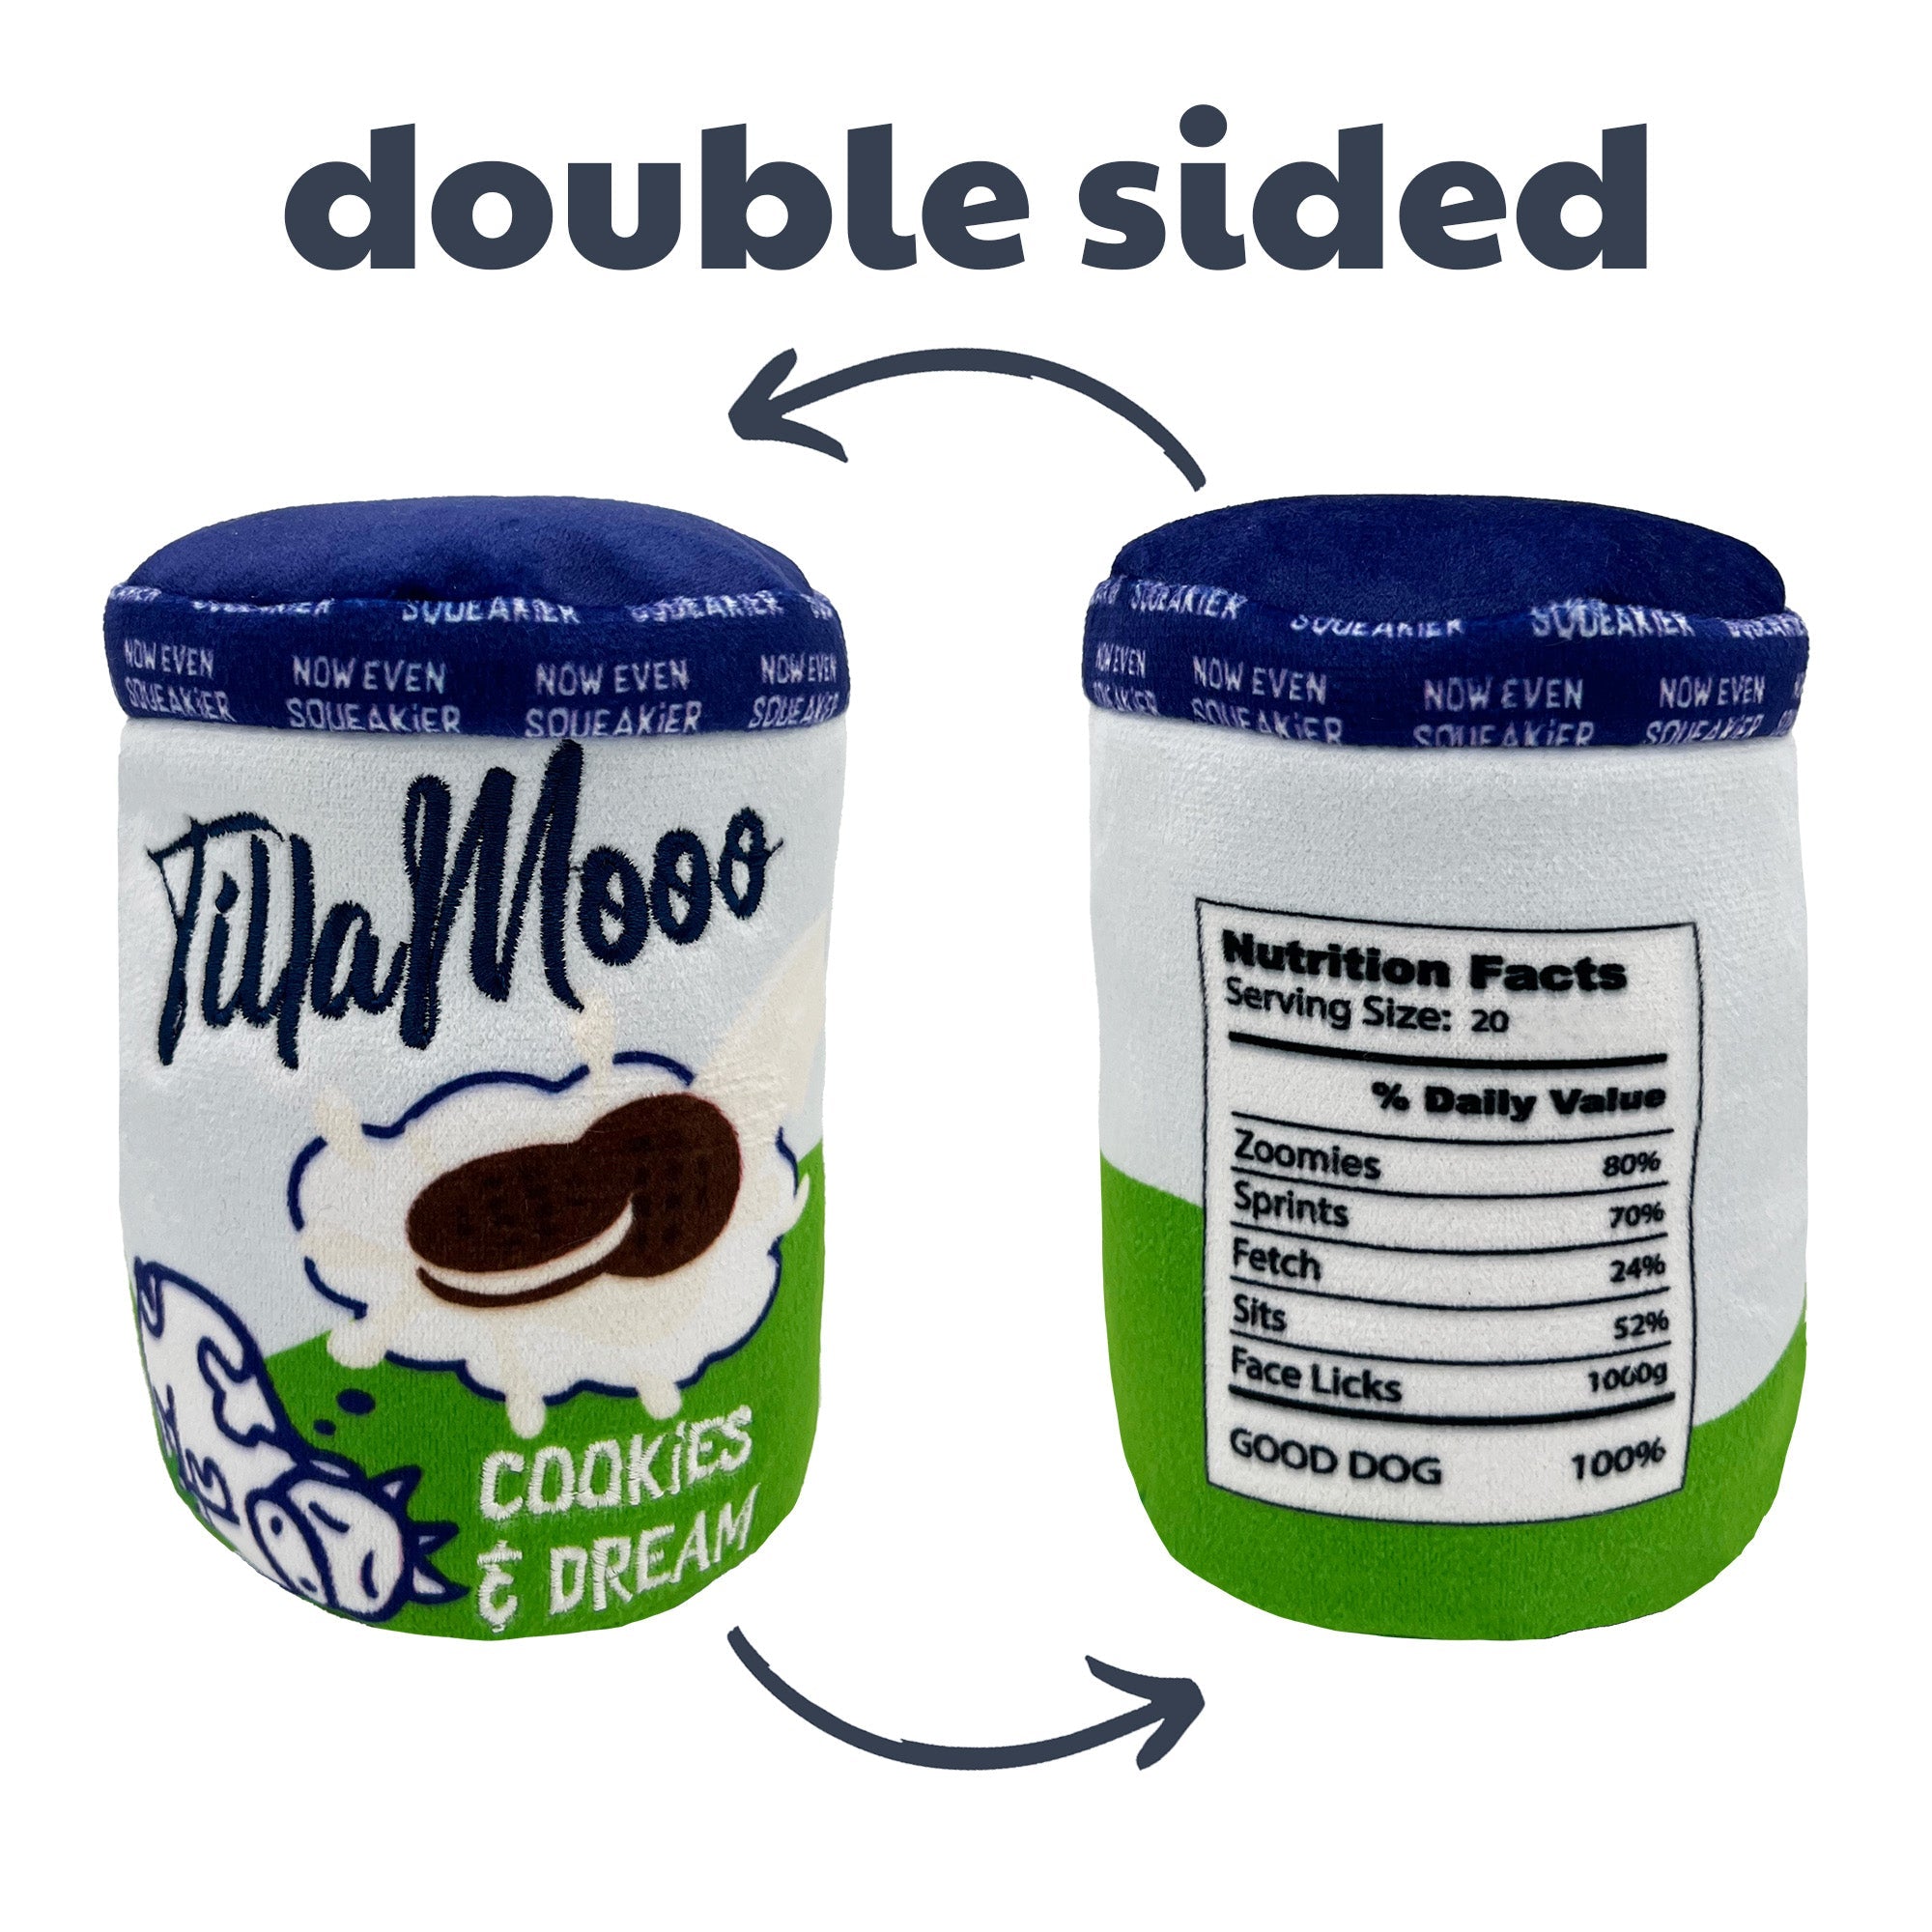 Tilla Moo Ice Cream (Double Sided)